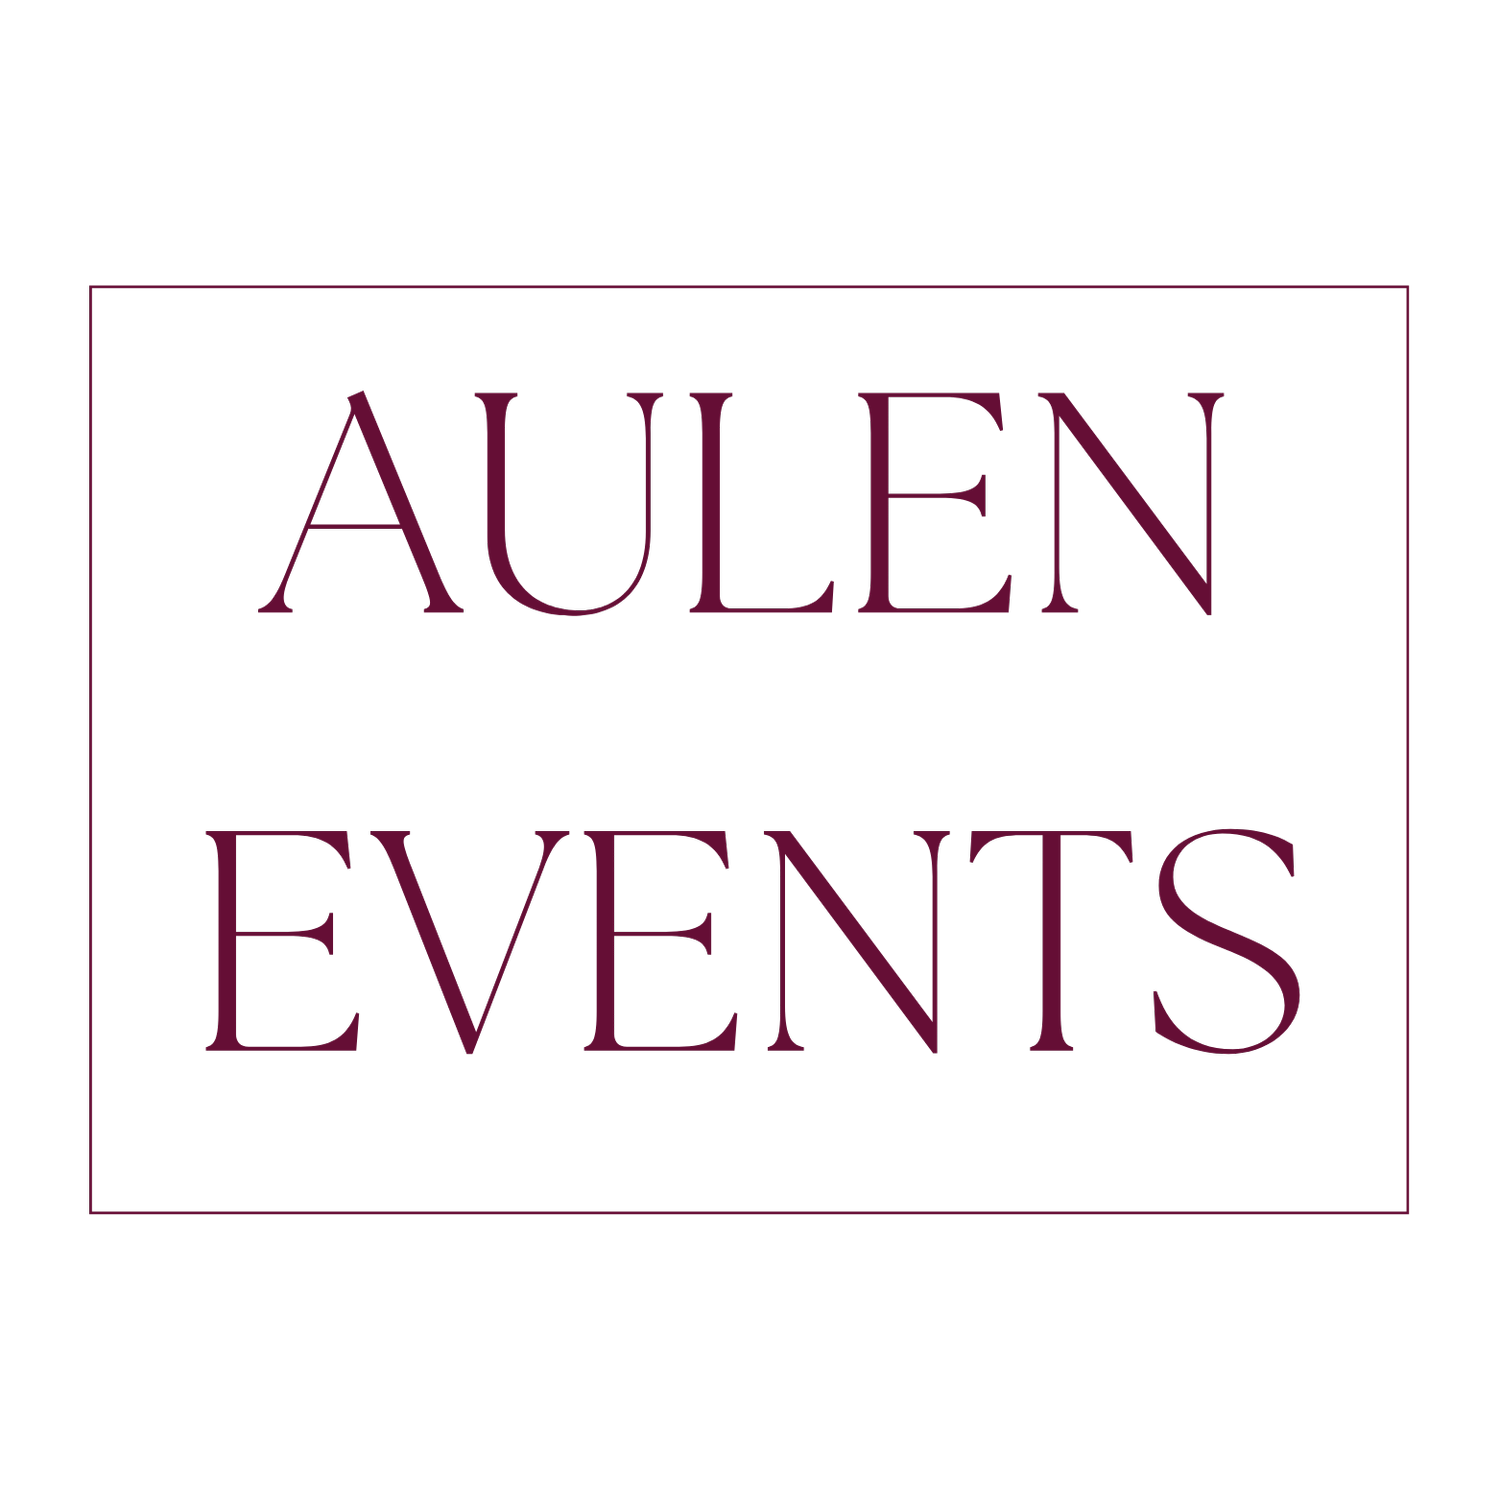 AULEN EVENTS